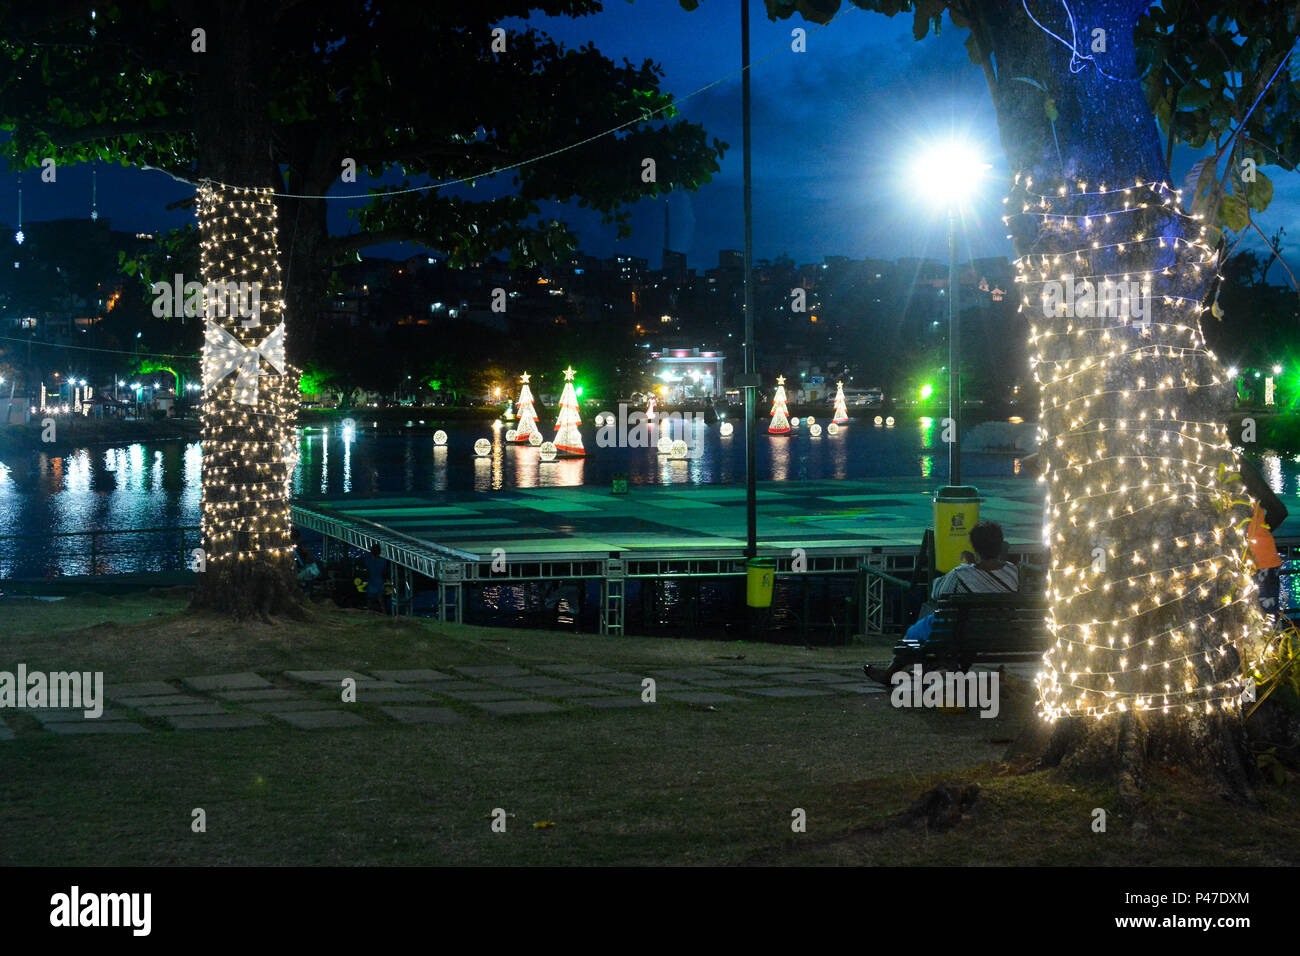 SALVADOR, BA - 09/12/2014: DECORAÇÃO DE NATAL EM SALVADOR - Dique do Tororó, durante Decoração de Natal em Salvador. (Foto: Mauro Akin Nassor / Fotoarena) Stock Photo